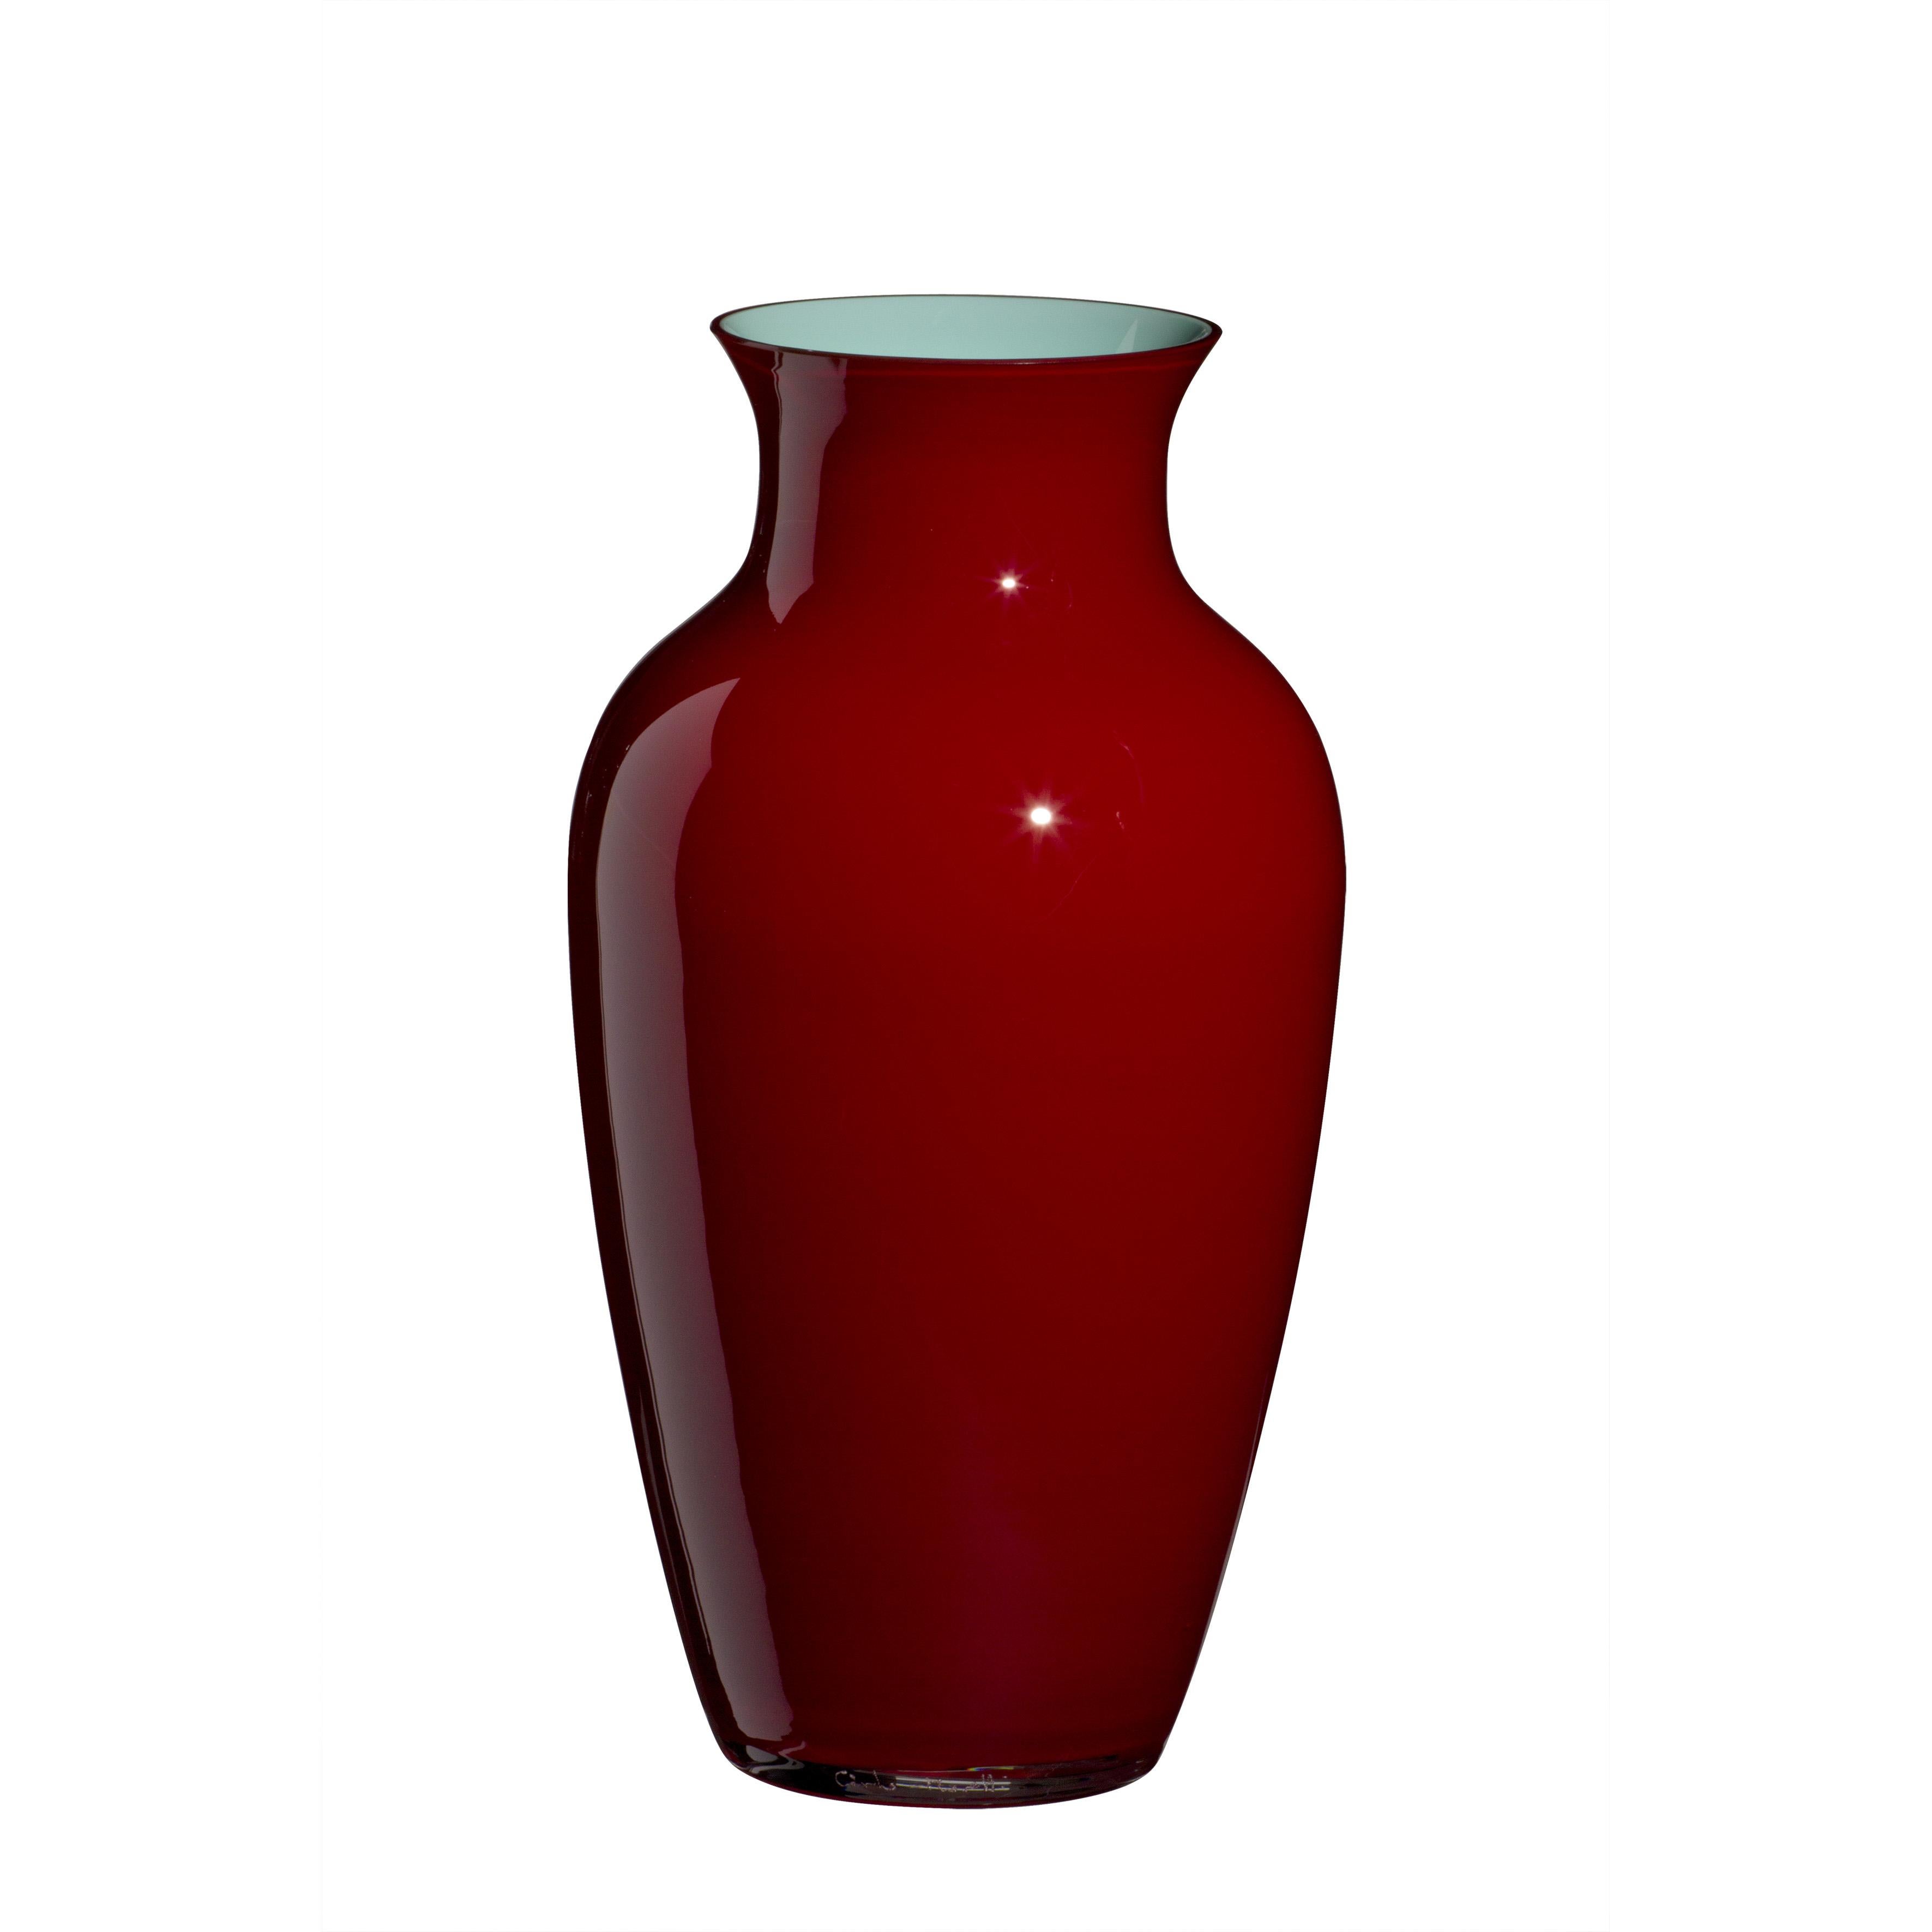 Die kleine I Cinesi-Vase in Dunkelrot von Carlo Moretti